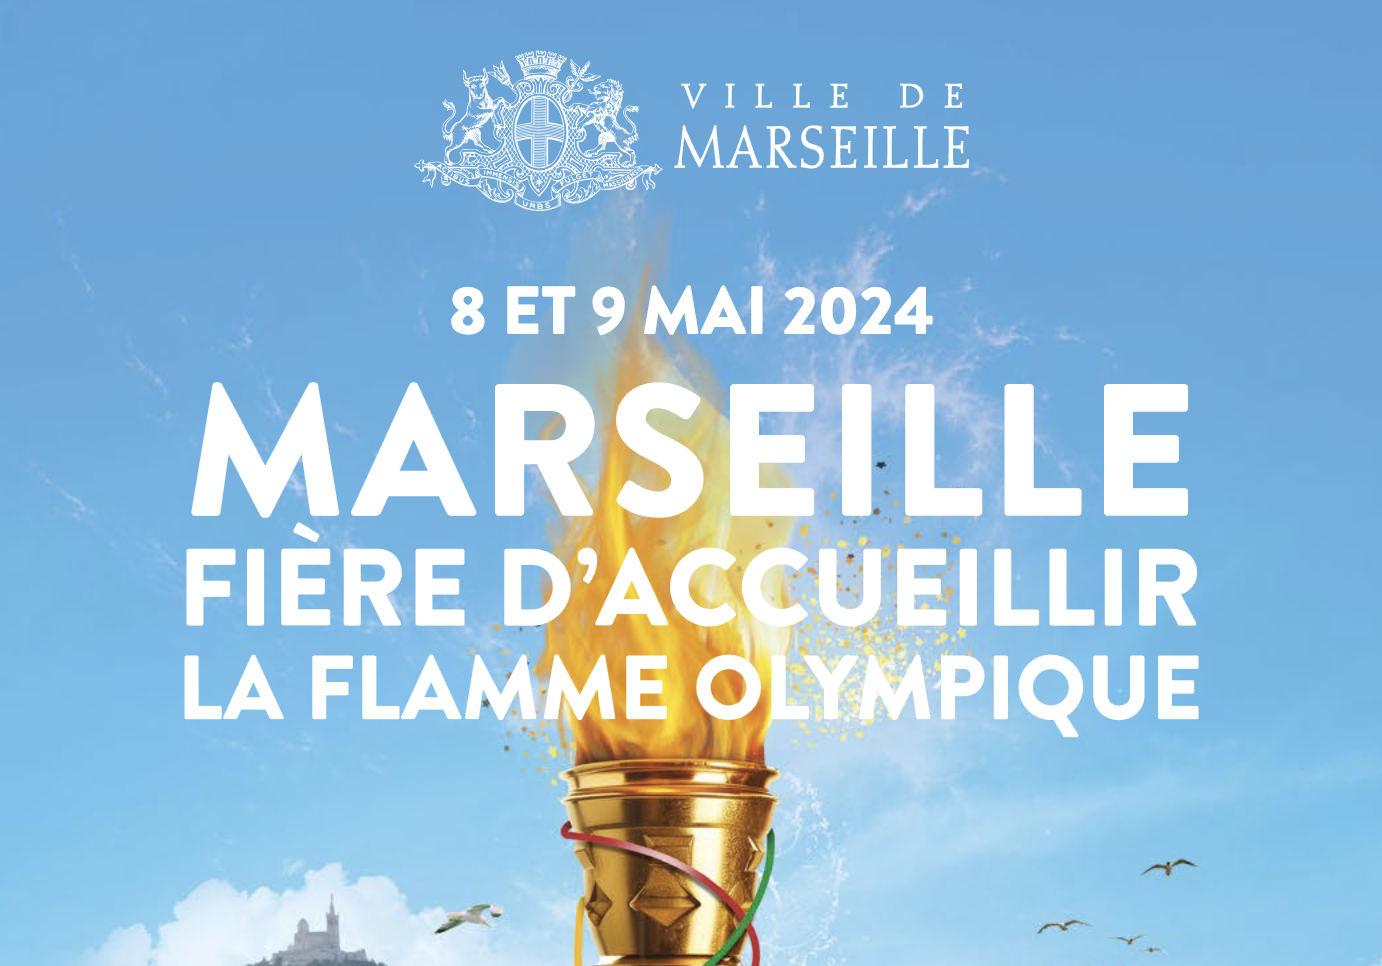 La Flamme Olympique illumine le Vieux-Port avec un show aérien spectaculaire!